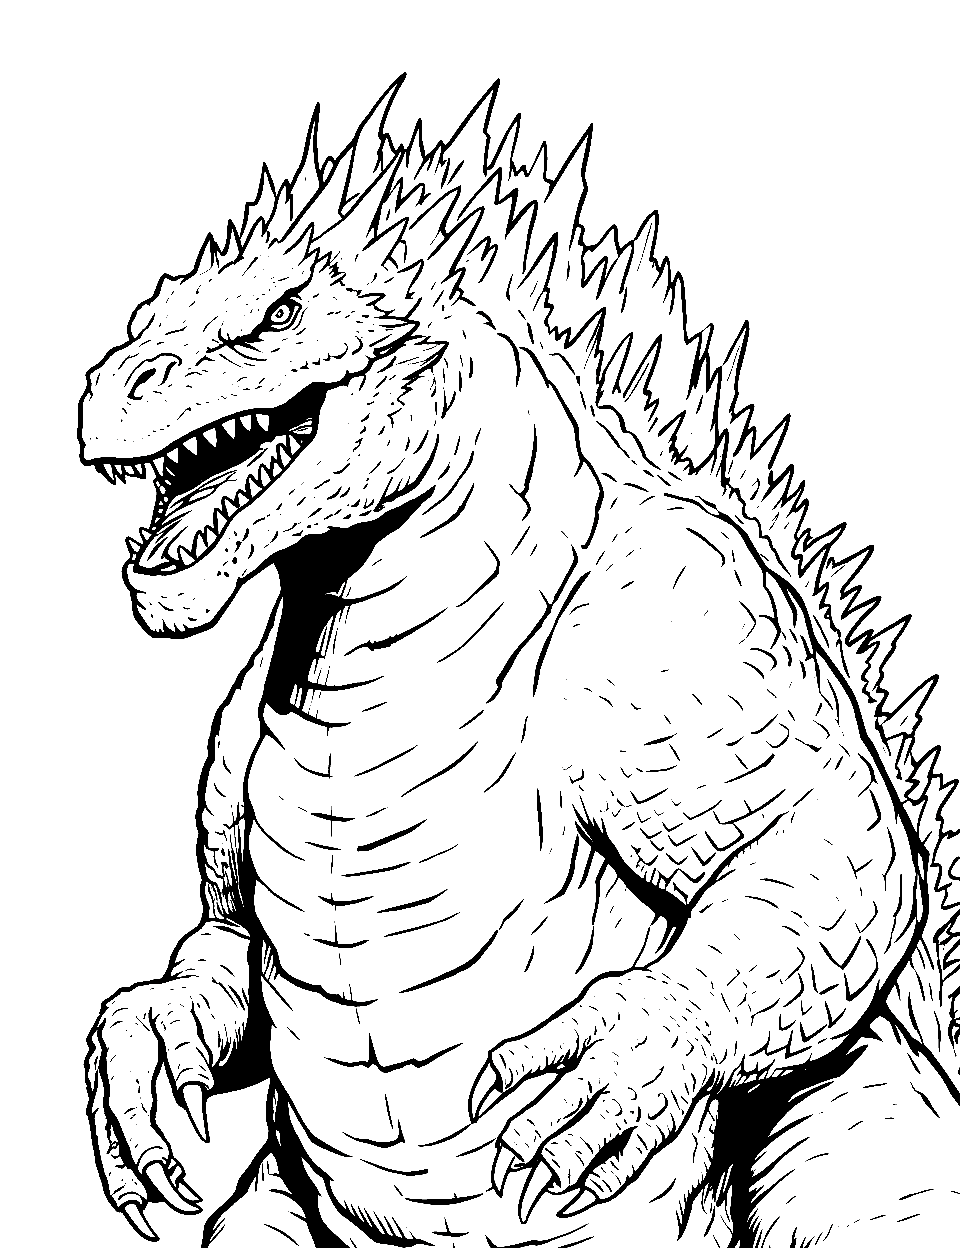 Godzilla Character Coloring Page - Face of the iconic Godzilla.